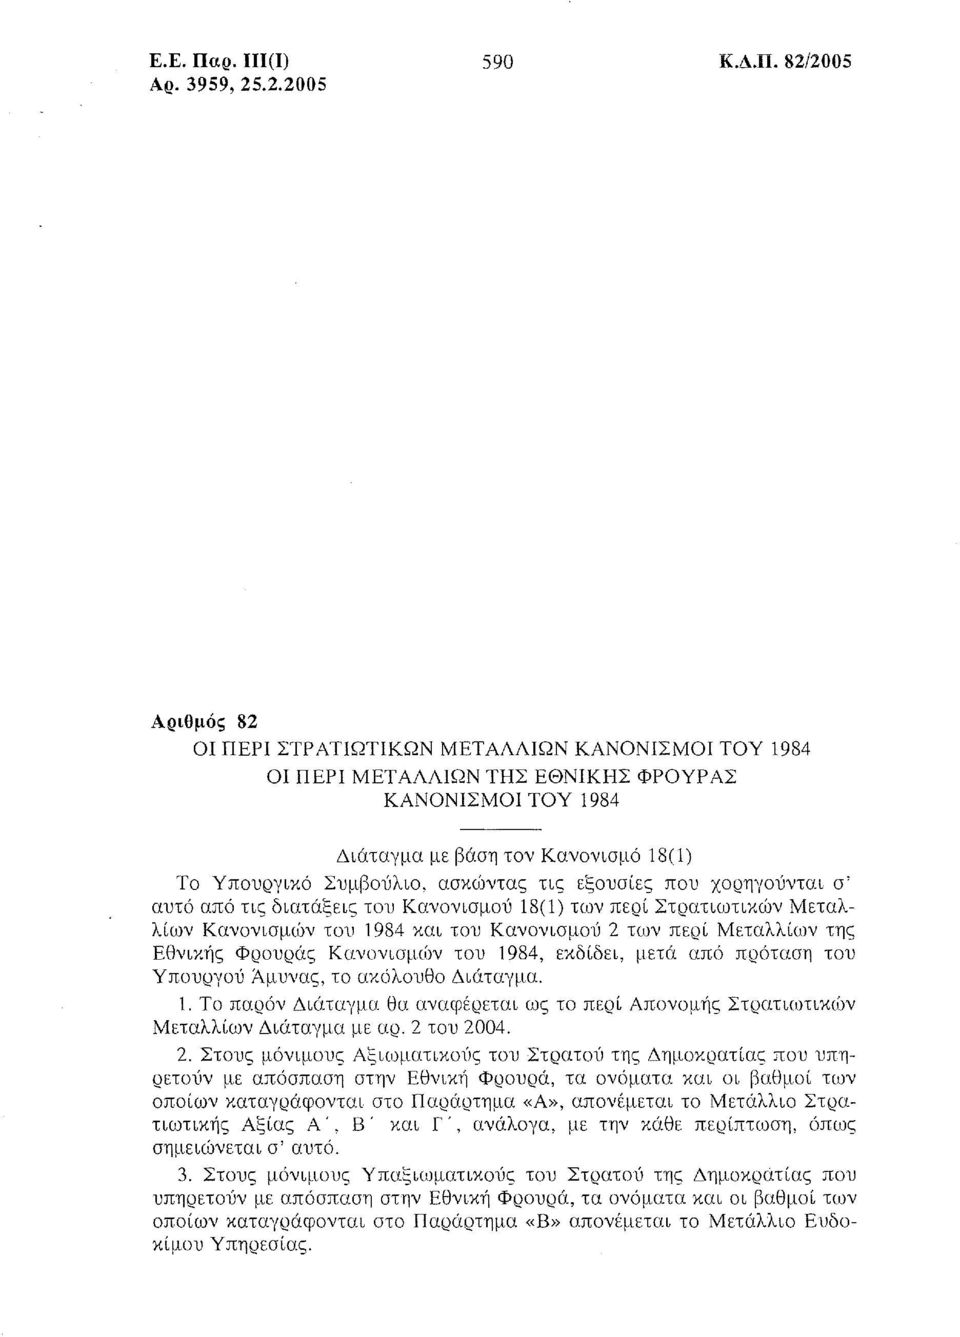 Συμβούλιο, ασκίί)ντας τις εξουσίες που χορηγούνται σ' αυτό από τις διατάξεις του Κανονισμού 18(1) των περί Στρατιωτικιί)ν Μεταλλίων Κανονισμών του 1984 και του Κανονισμού 2 των περί Μεταλλίων της